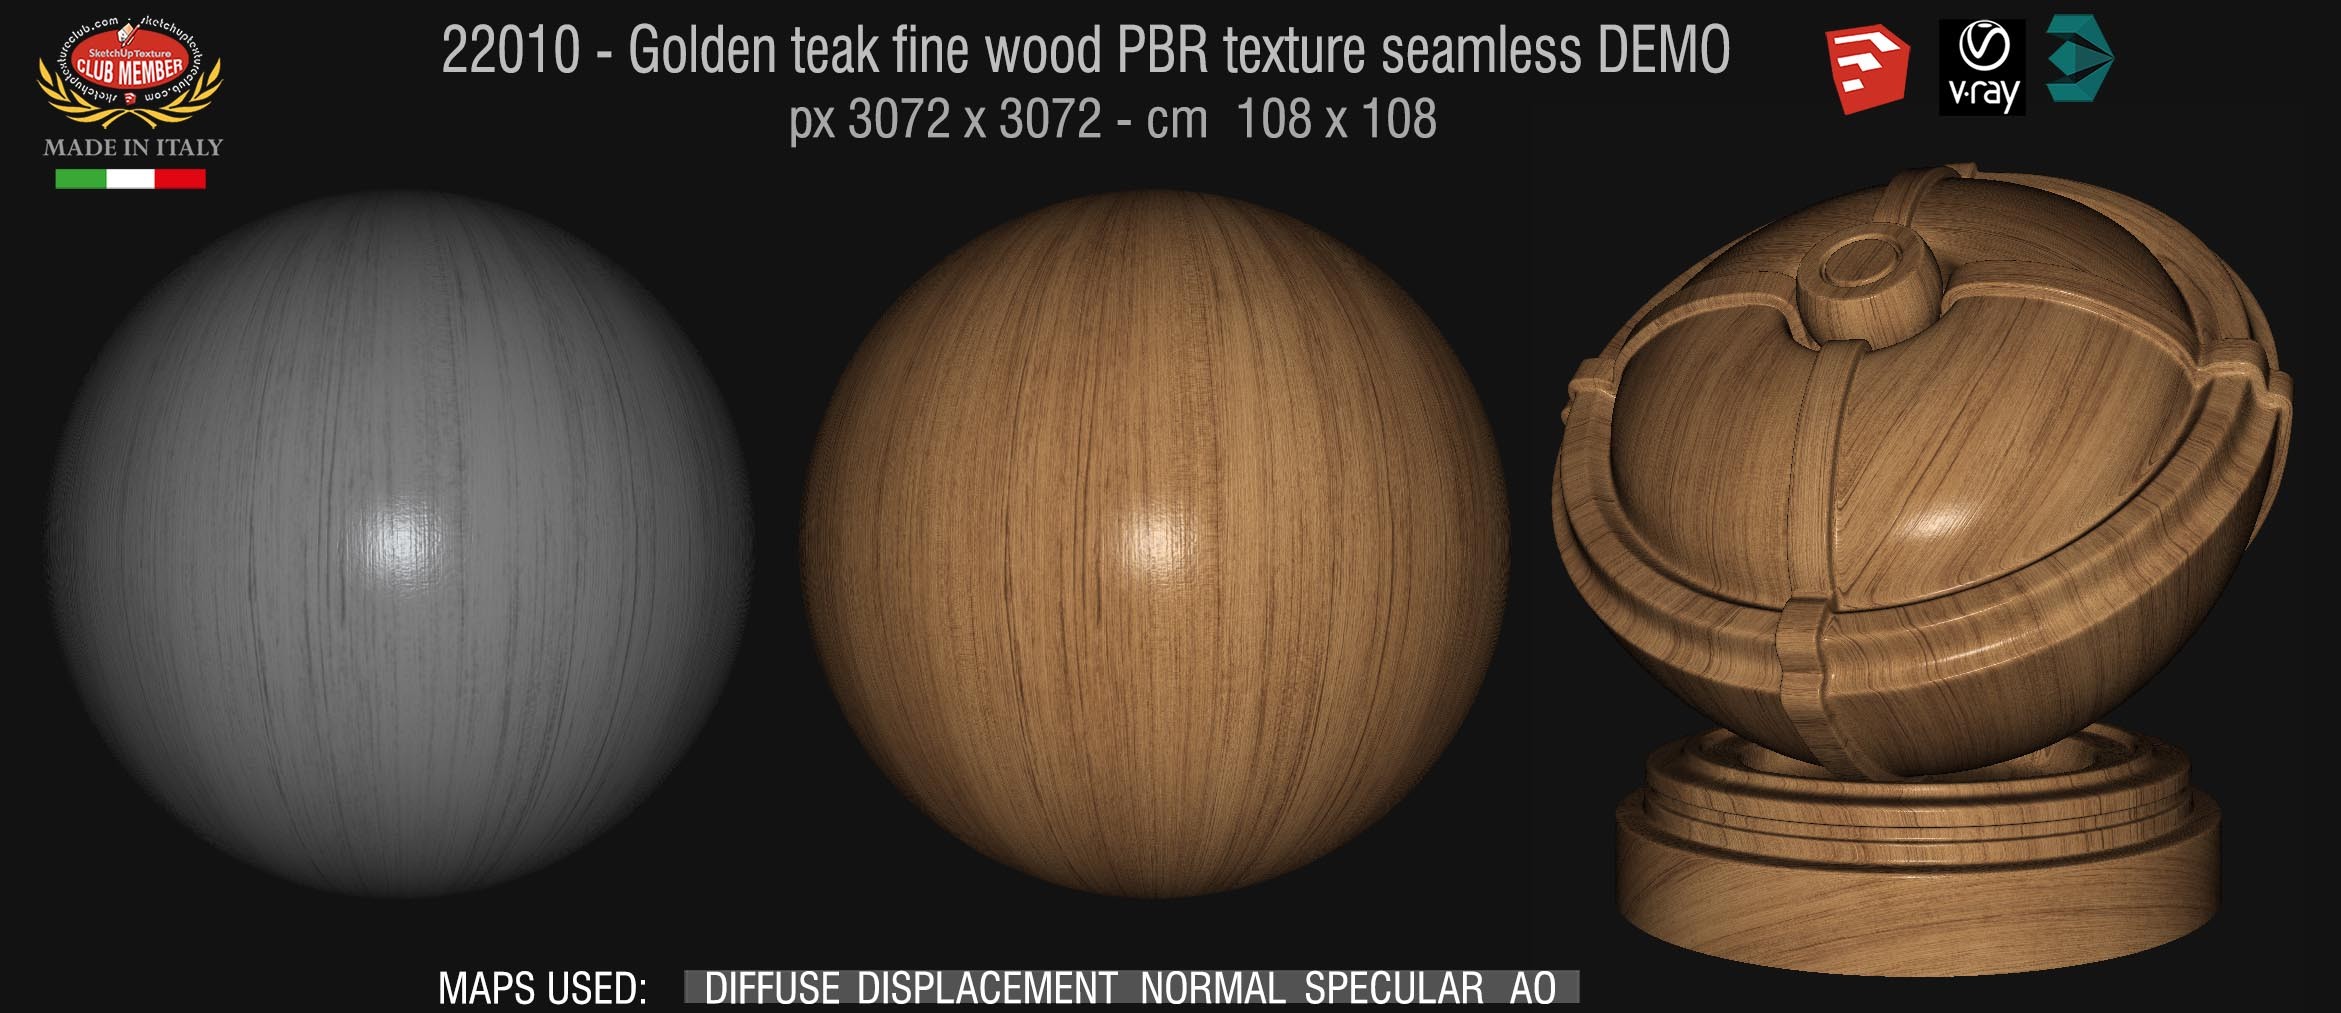 22010 Golden teak fine wood PBR texture seamless DEMO